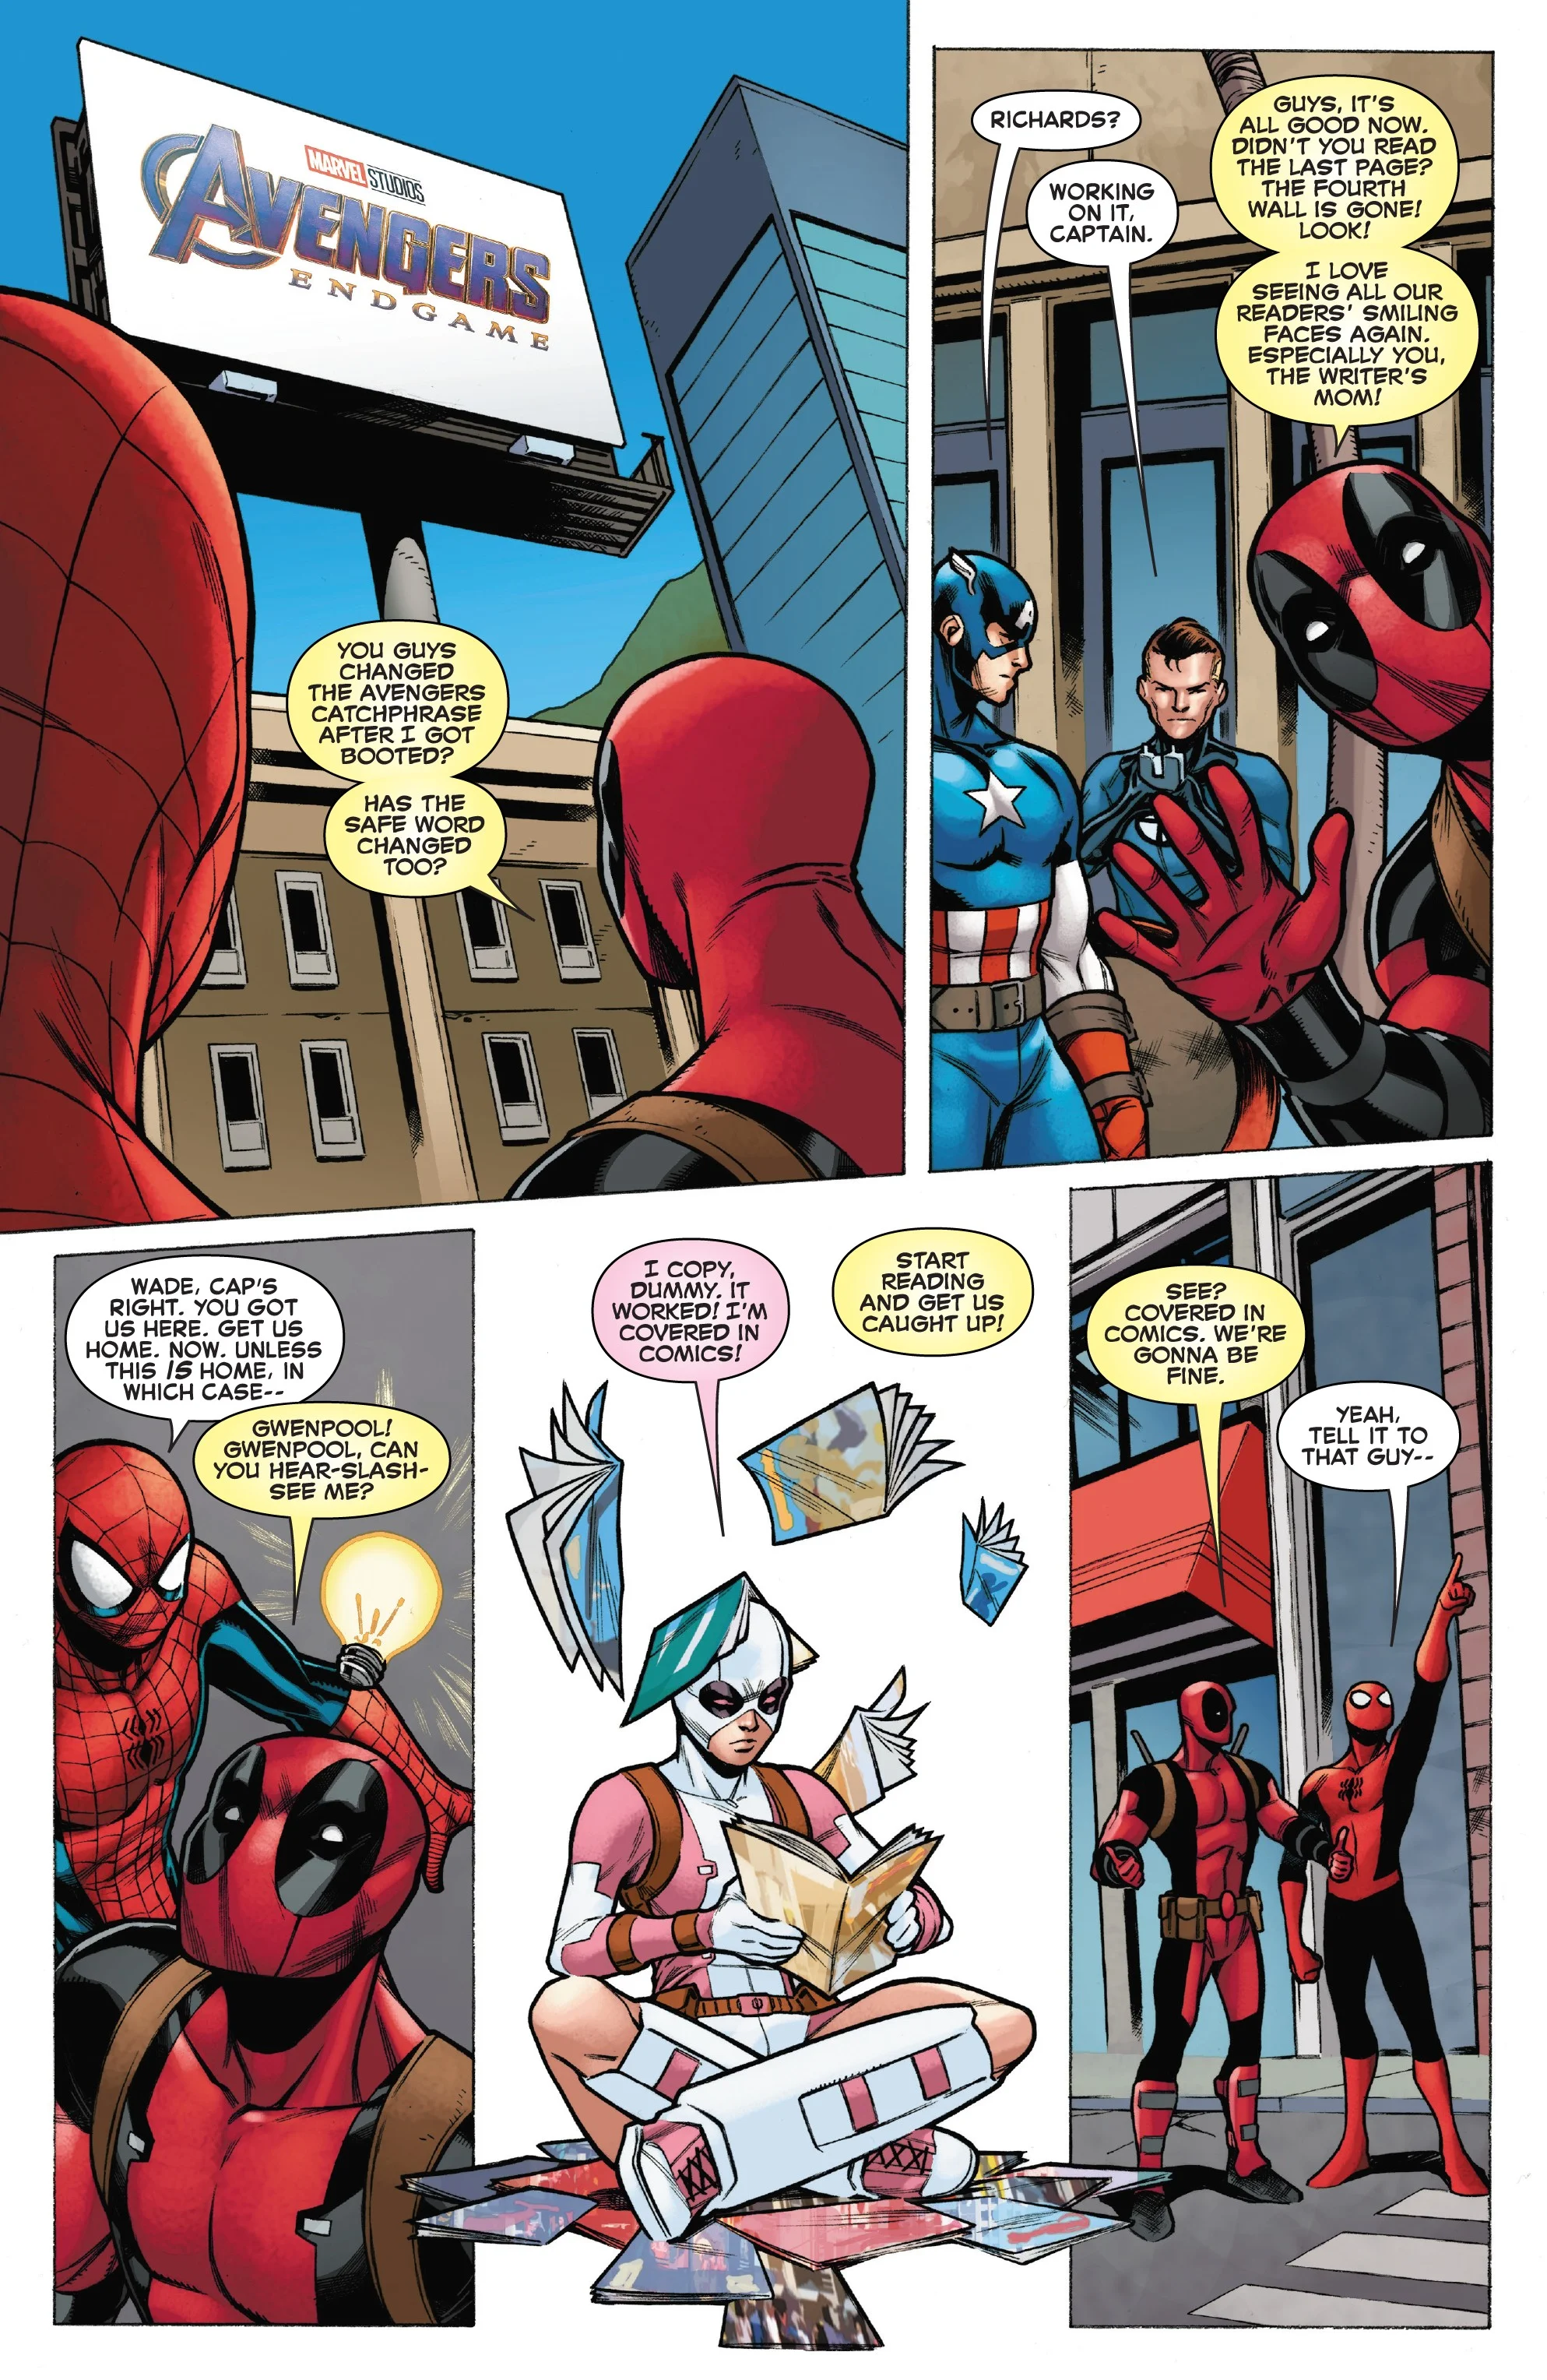 Как Дэдпул поиздевался над комиксами Marvel в честь закрытия серии Spider-Man/Deadpool? - фото 4